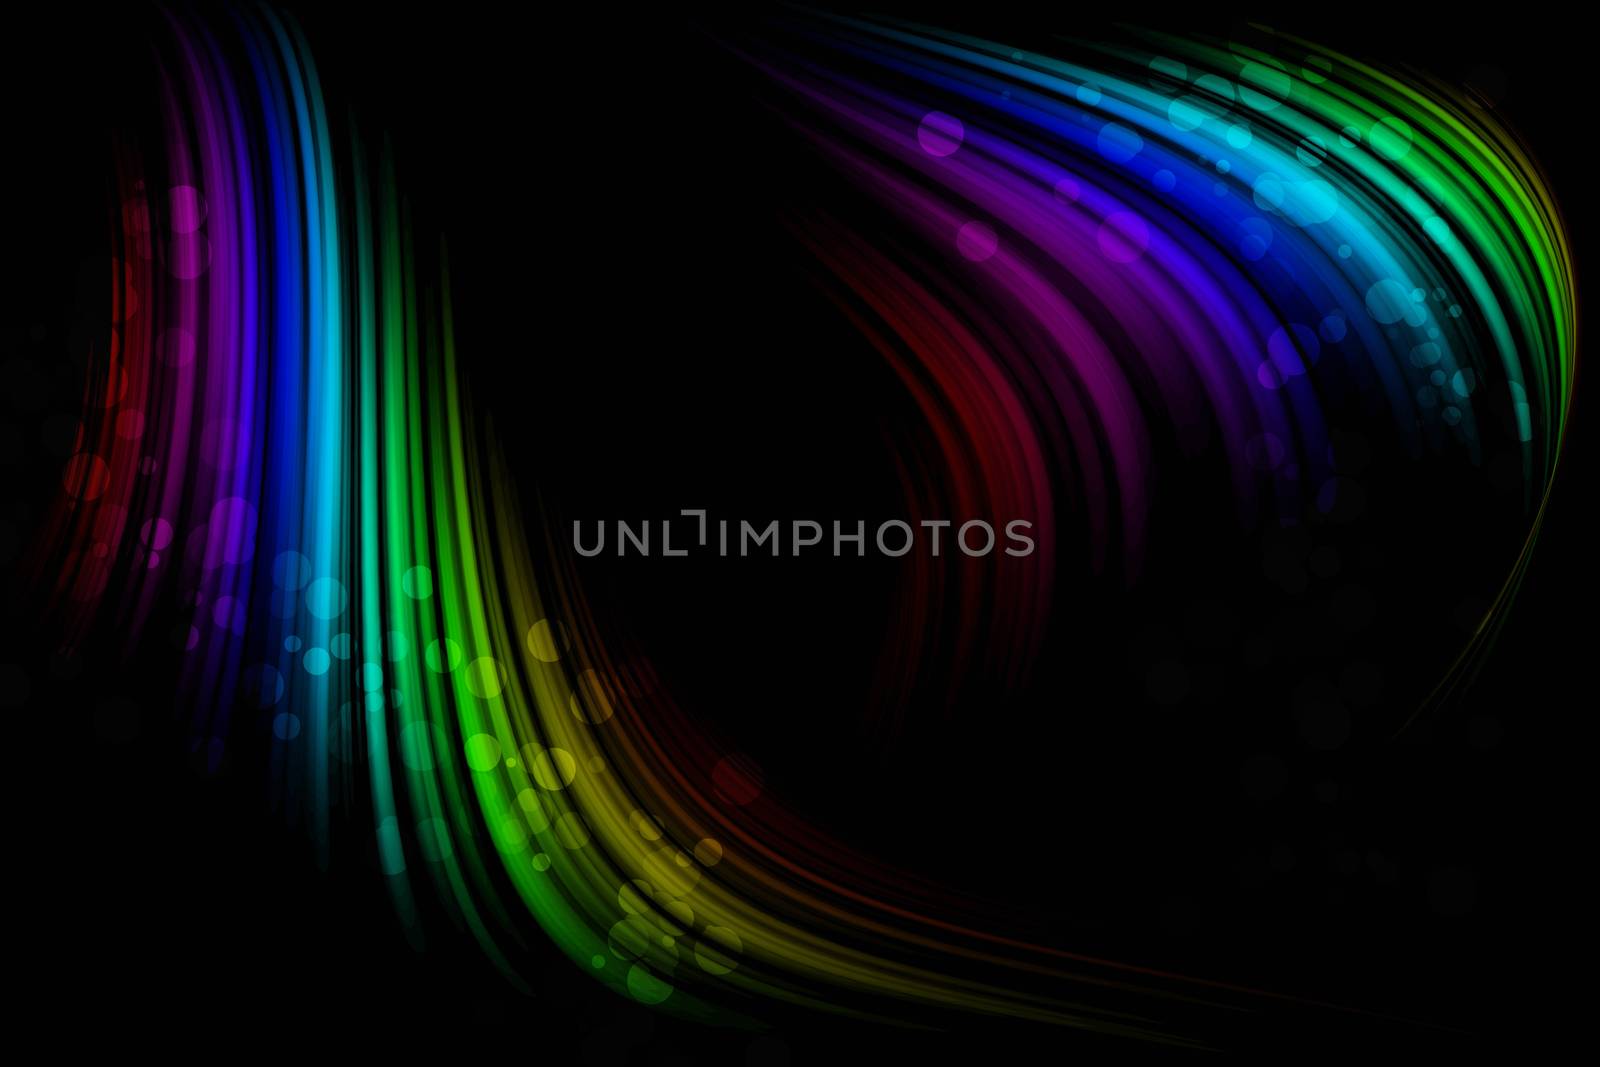 Bright neon background for design by natali_brill